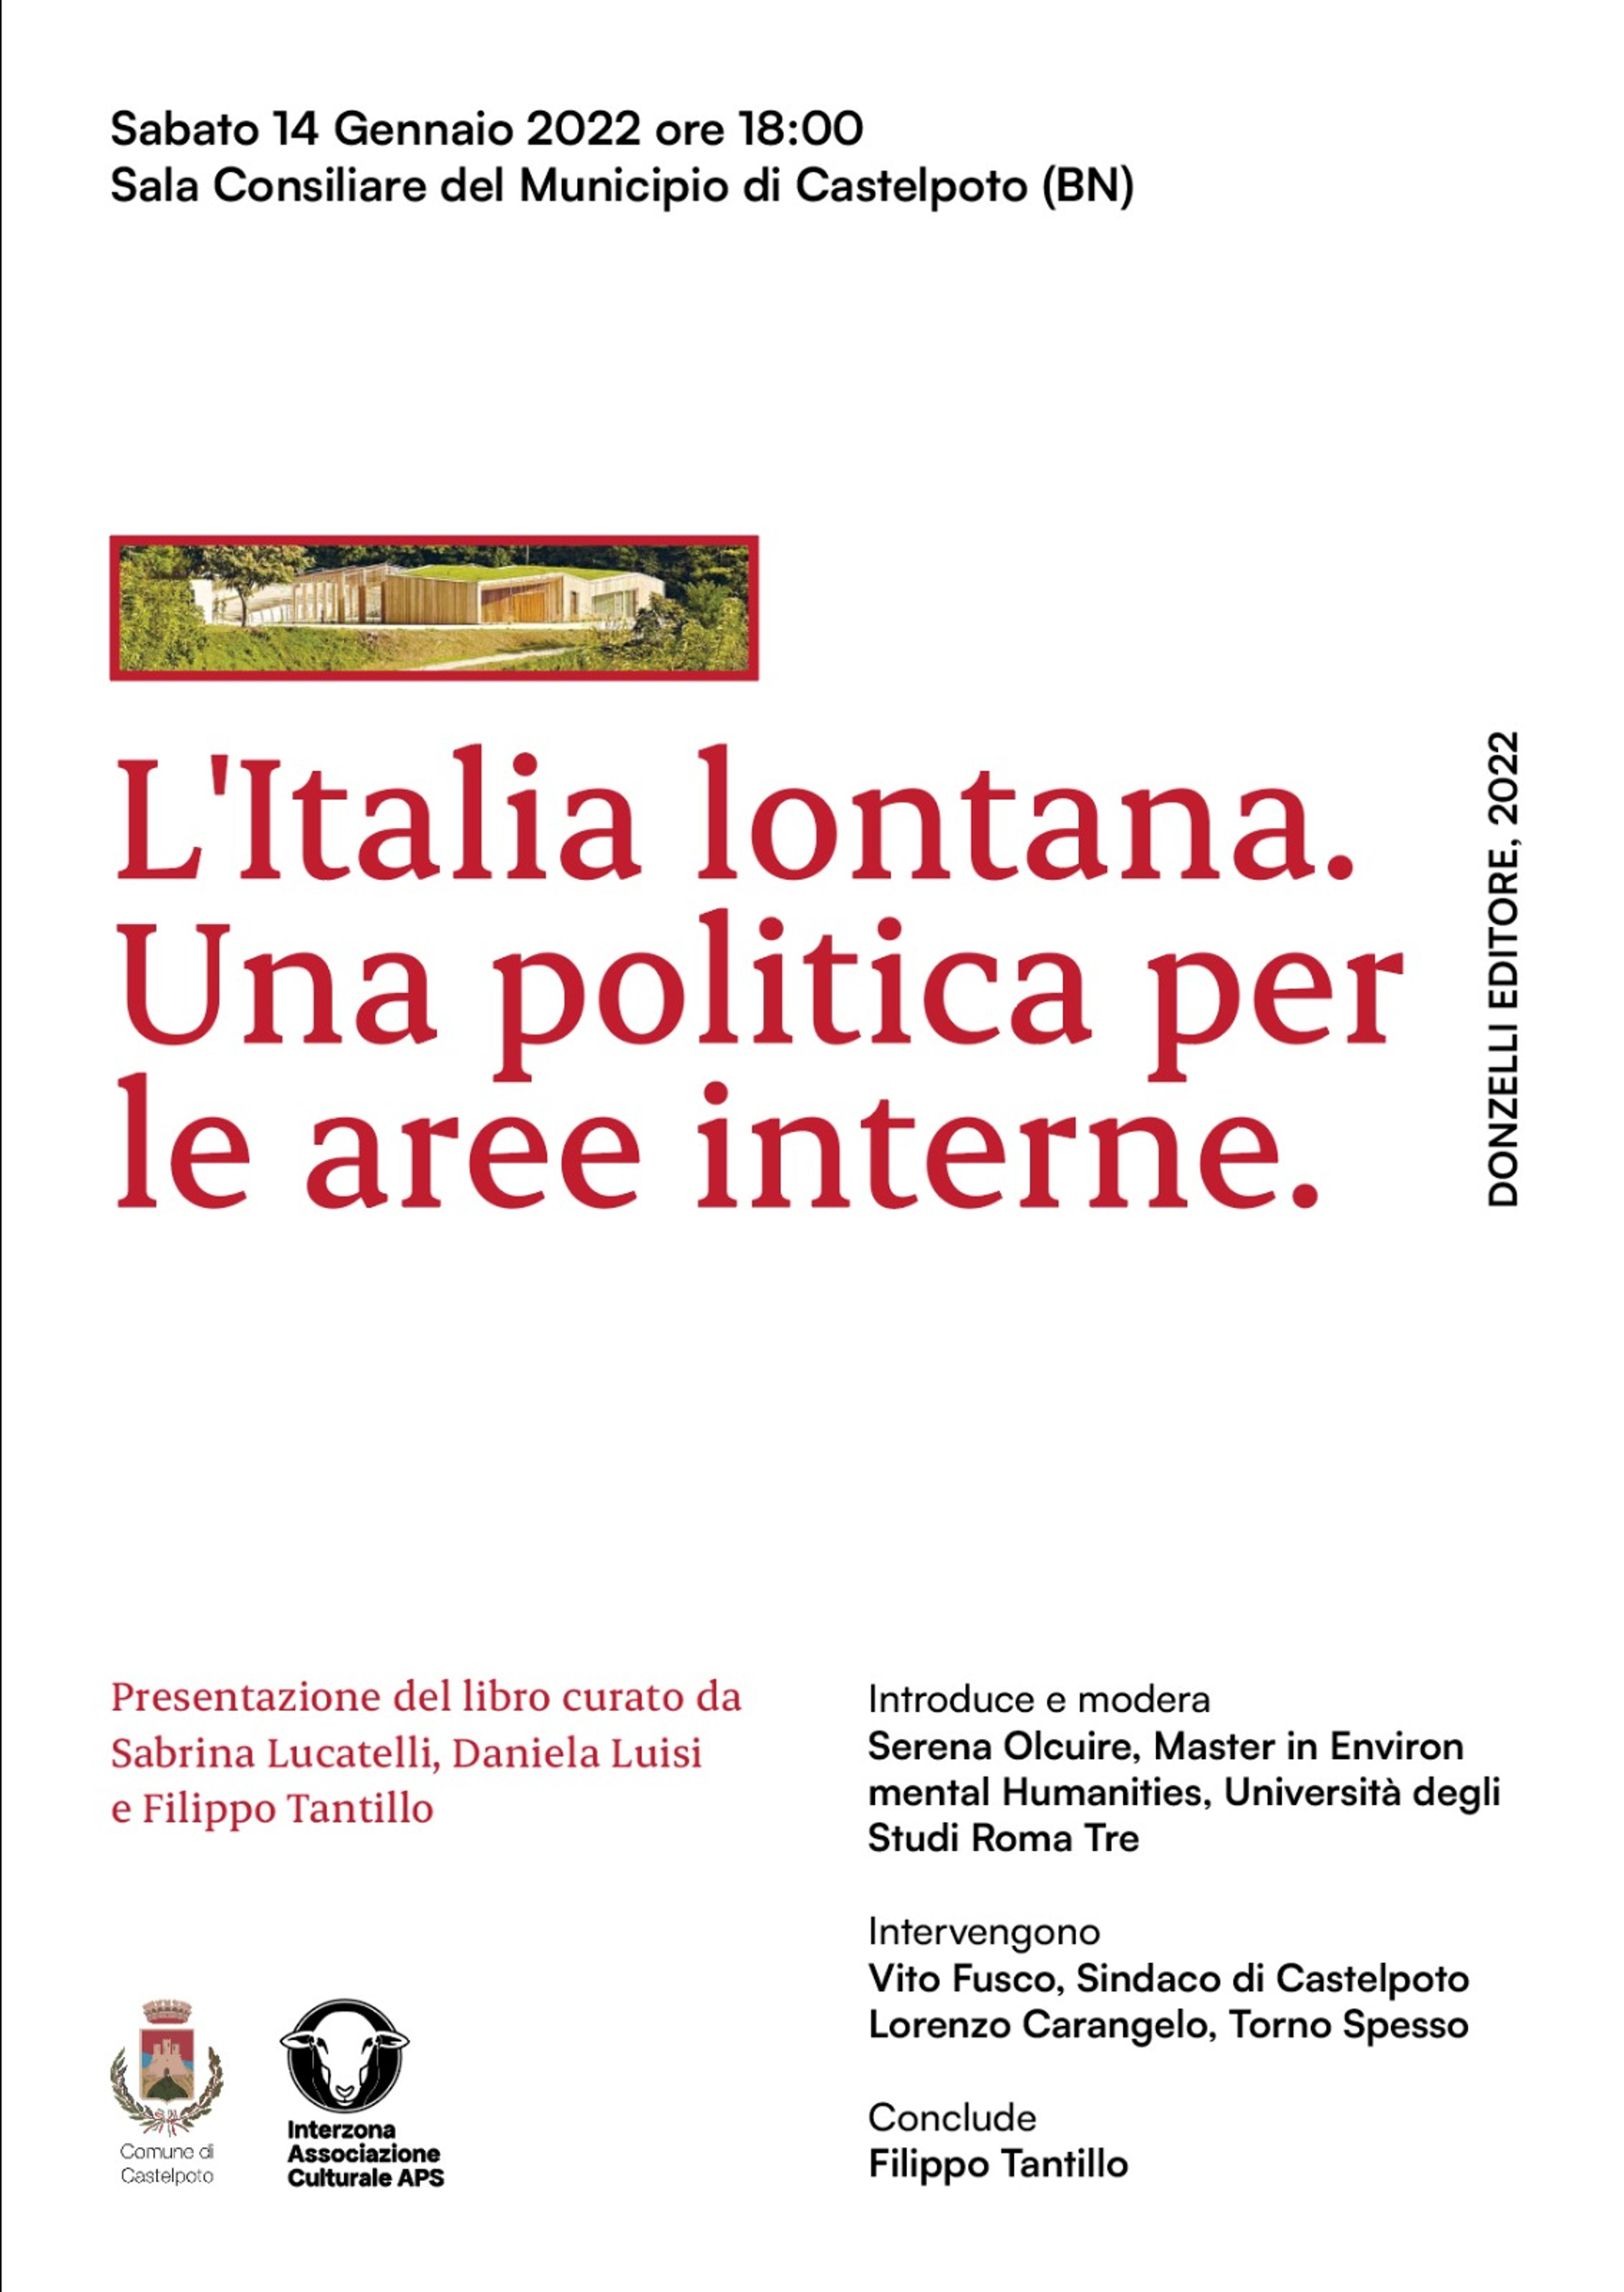 A Castelpoto la presentazione del libro "L'Italia lontana" con Filippo Tantillo.